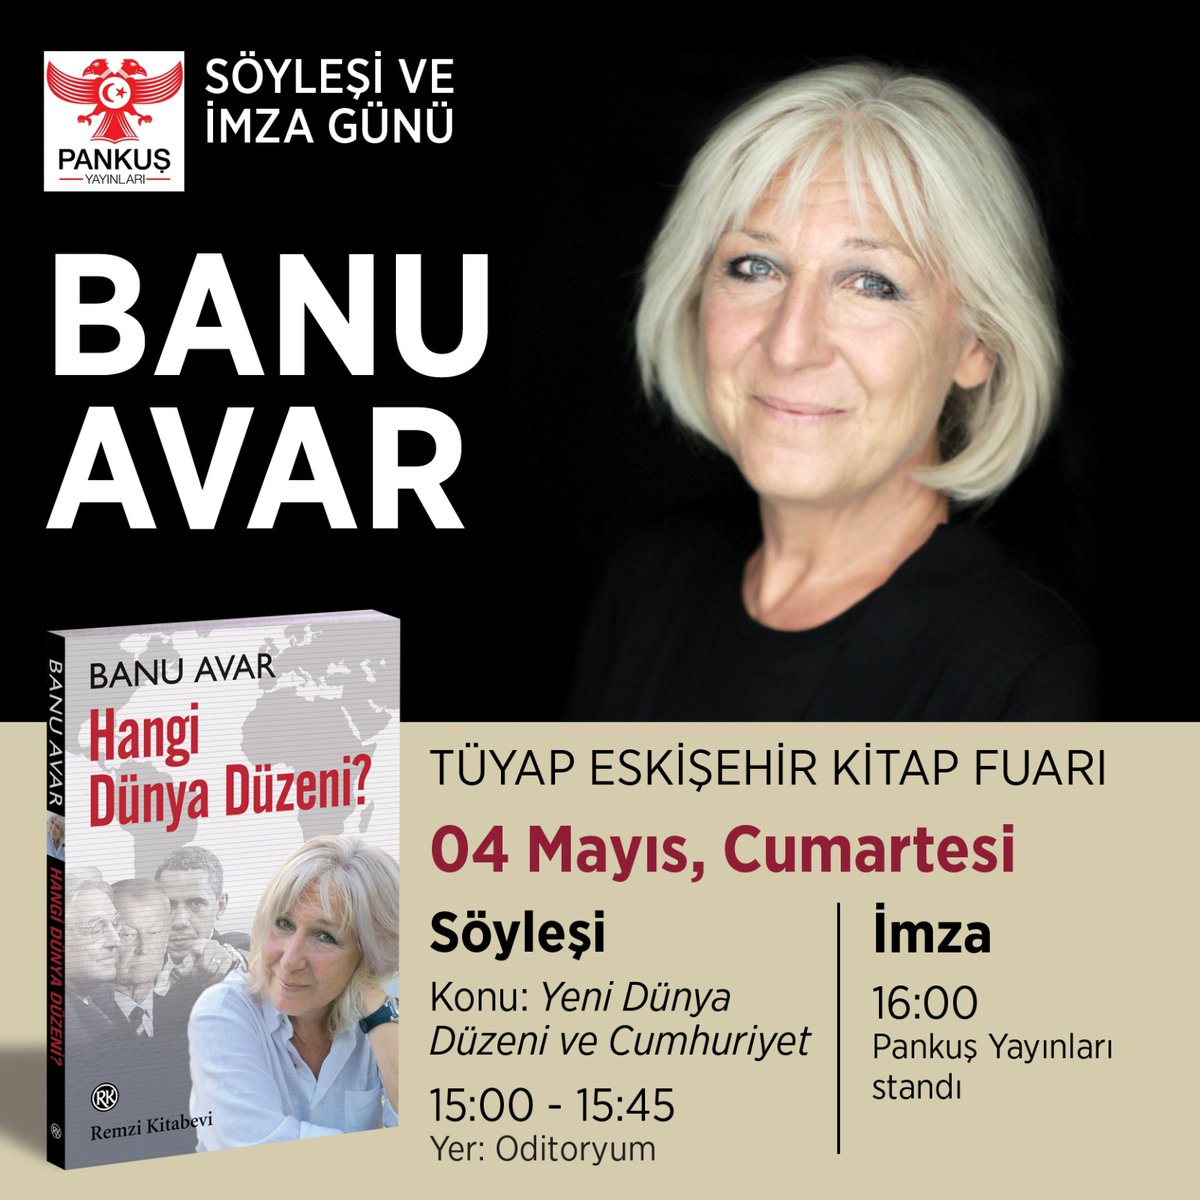 @AvarBanu 04 Mayıs Cumartesi günü saat: 15:00'te Tüyap Eskişehir Kitap Fuarı'nda okurlarıyla buluşuyor.

#banuavar #yenidünyadüzeni #imzagünü #söyleşi